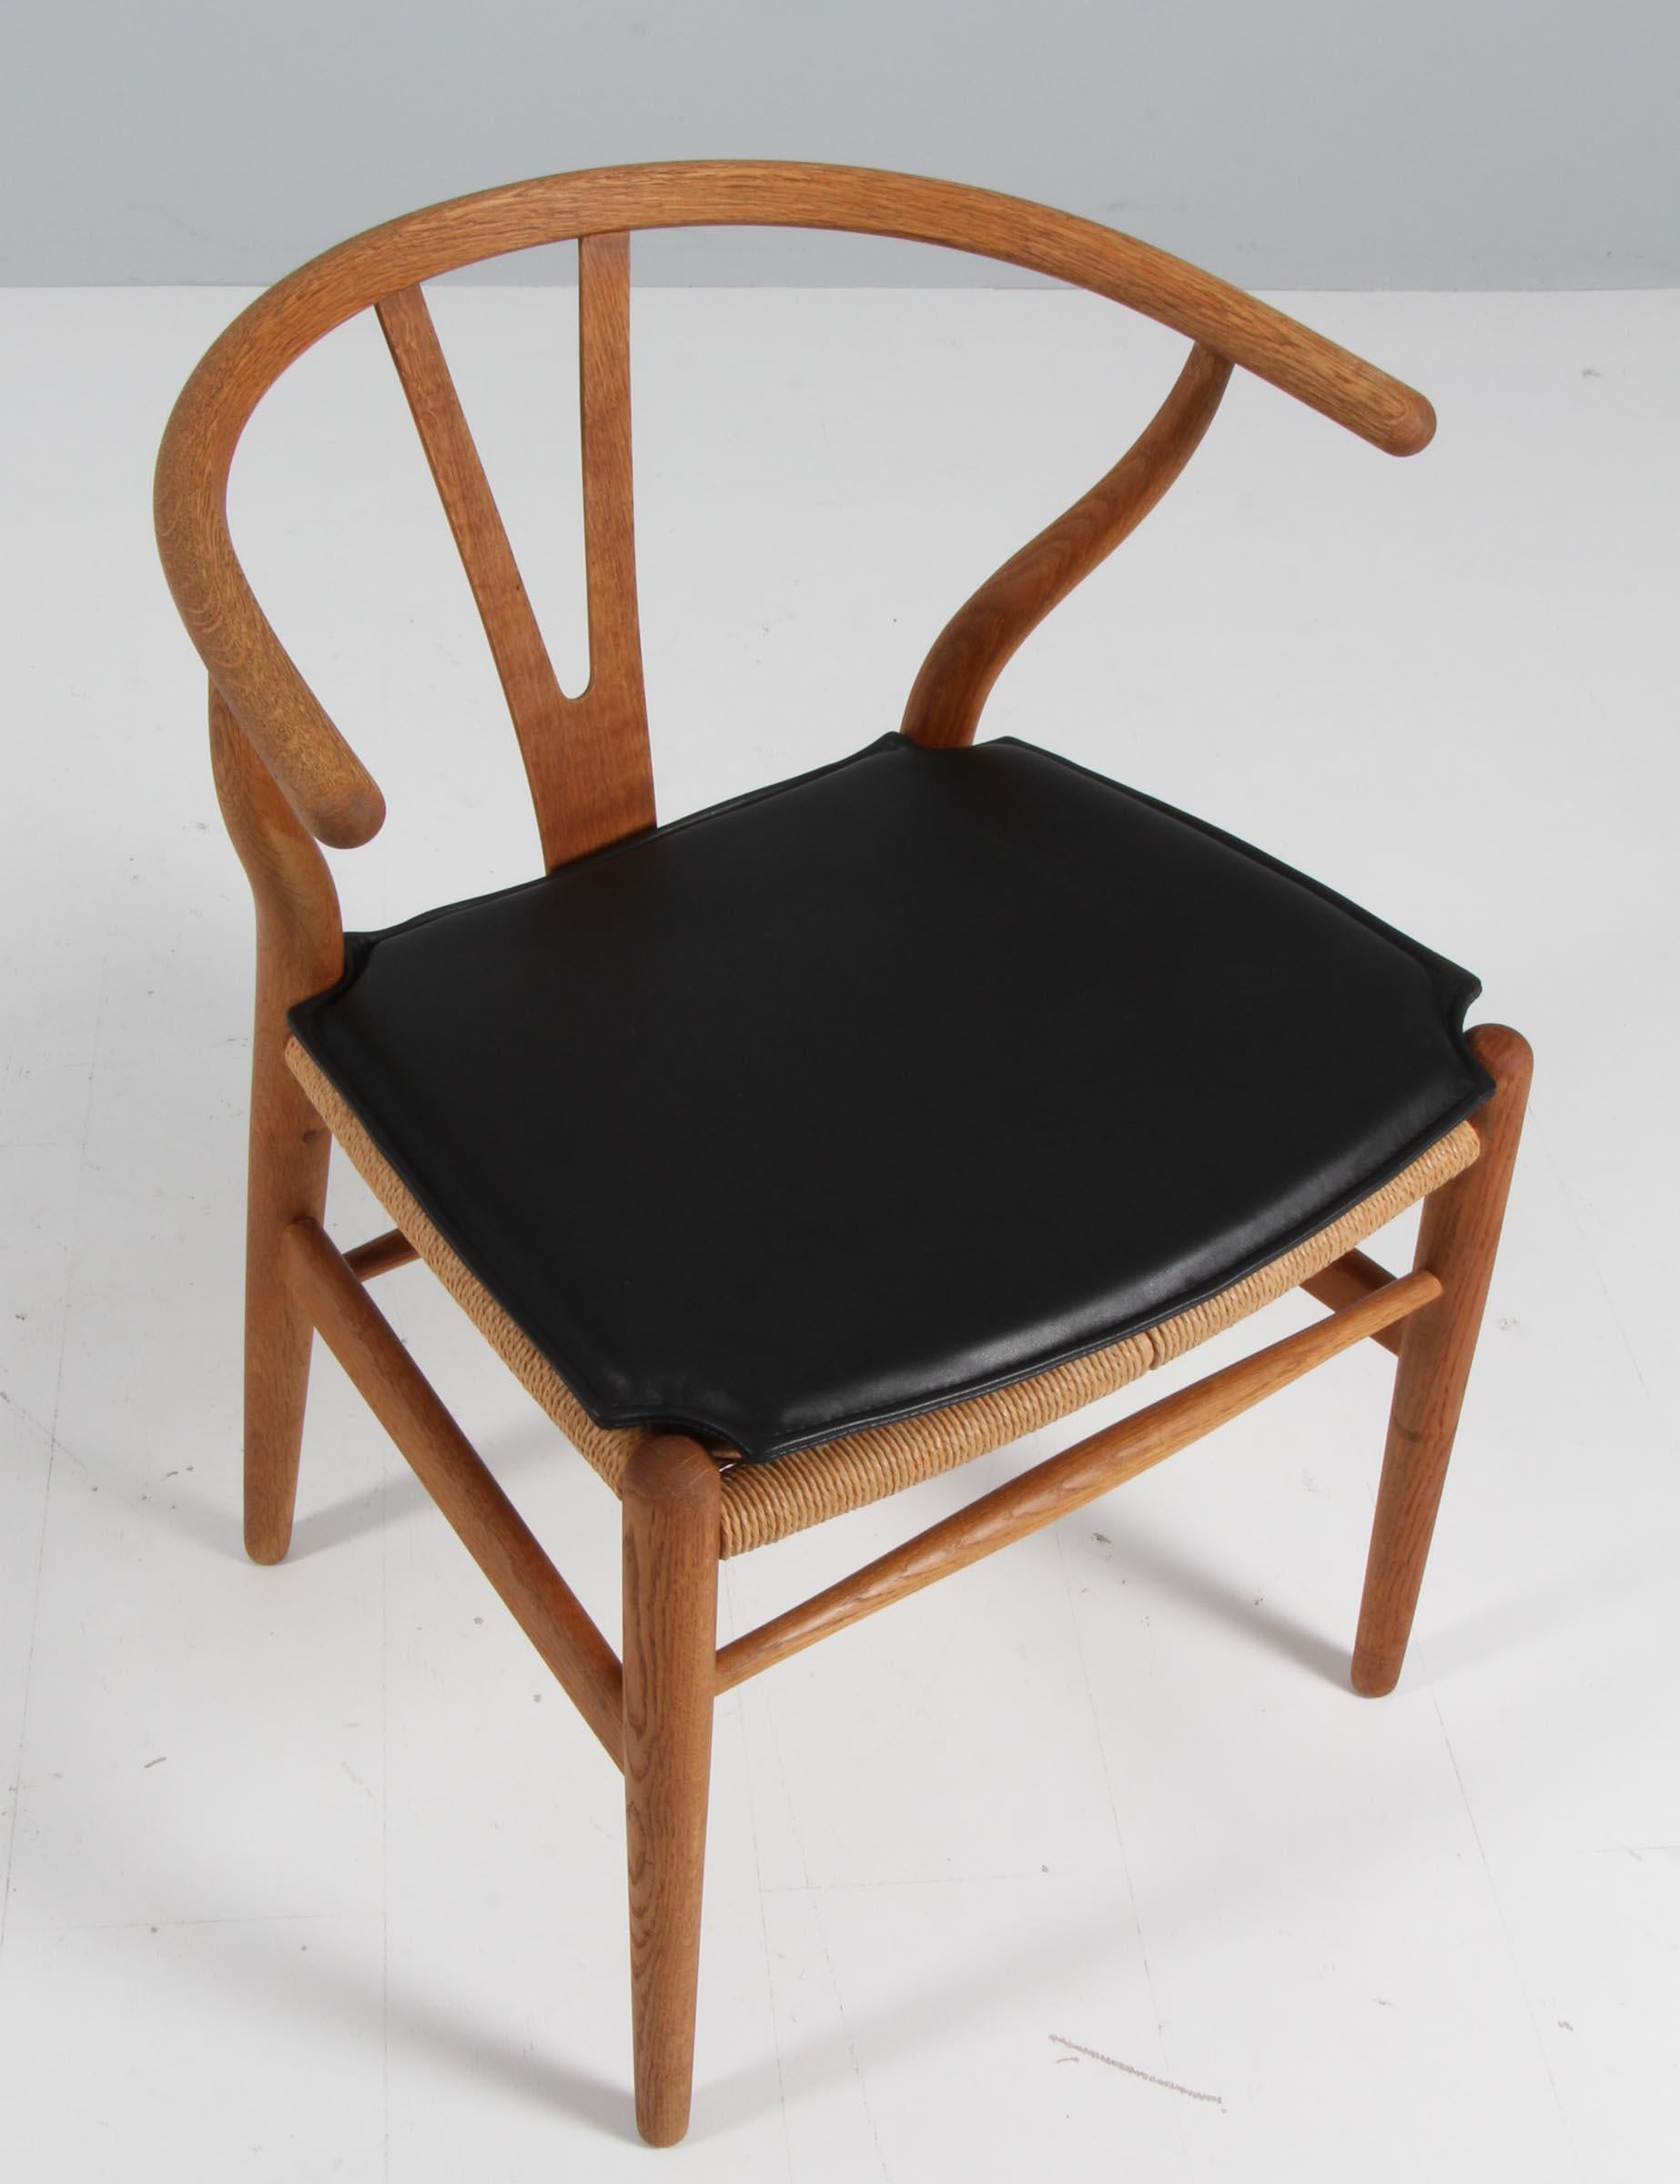 Coussins Hans J. Wegner pour la chaise wishbone modèle CH24.

Fabriqué en cuir pur aniline noir et en mousse de bonne qualité.

Seulement le coussin, pas la chaise.